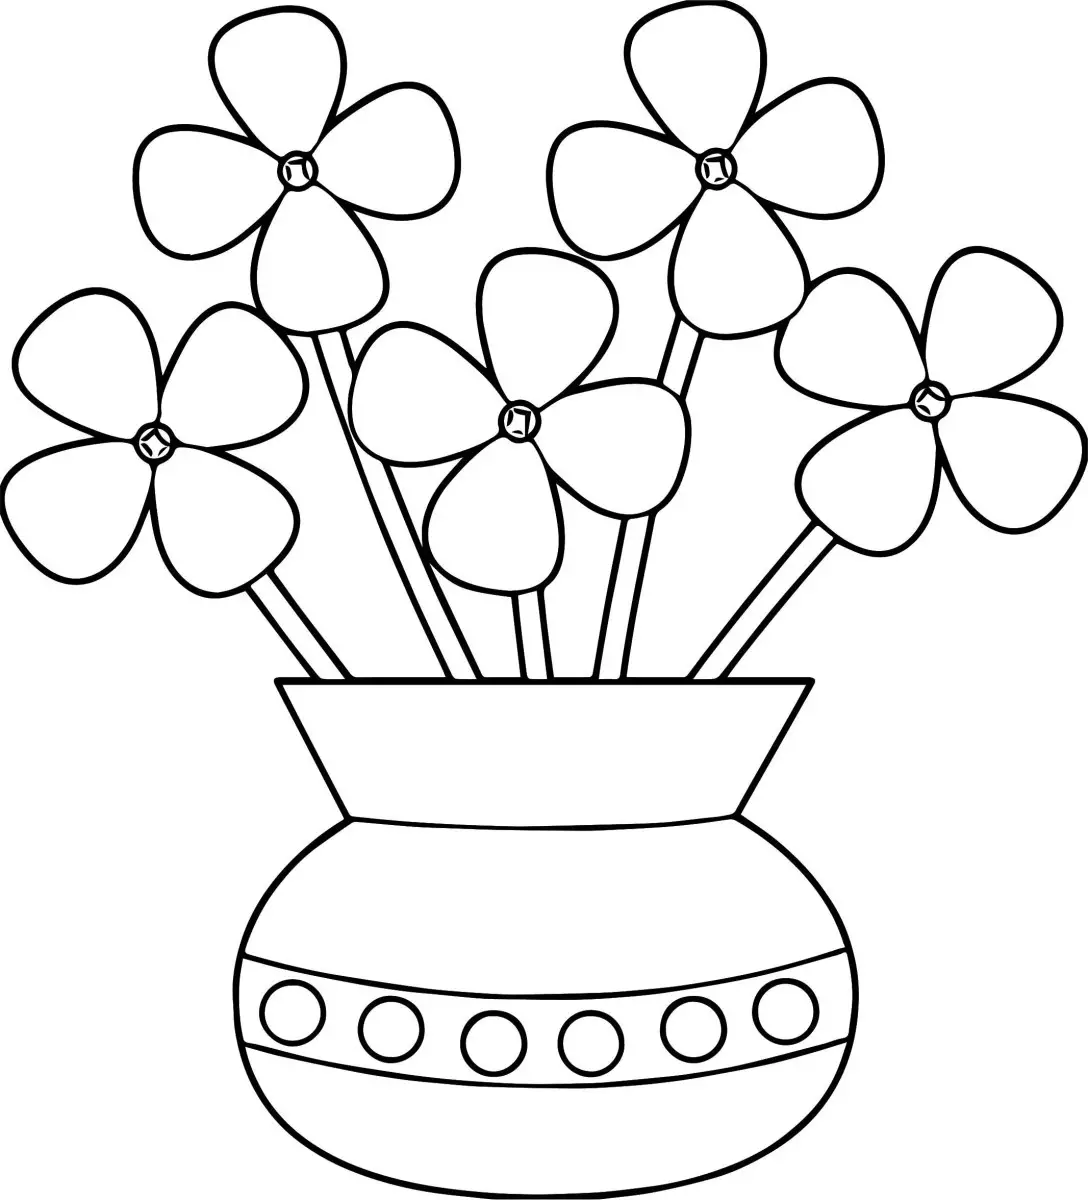 Bright flower bouquet for children